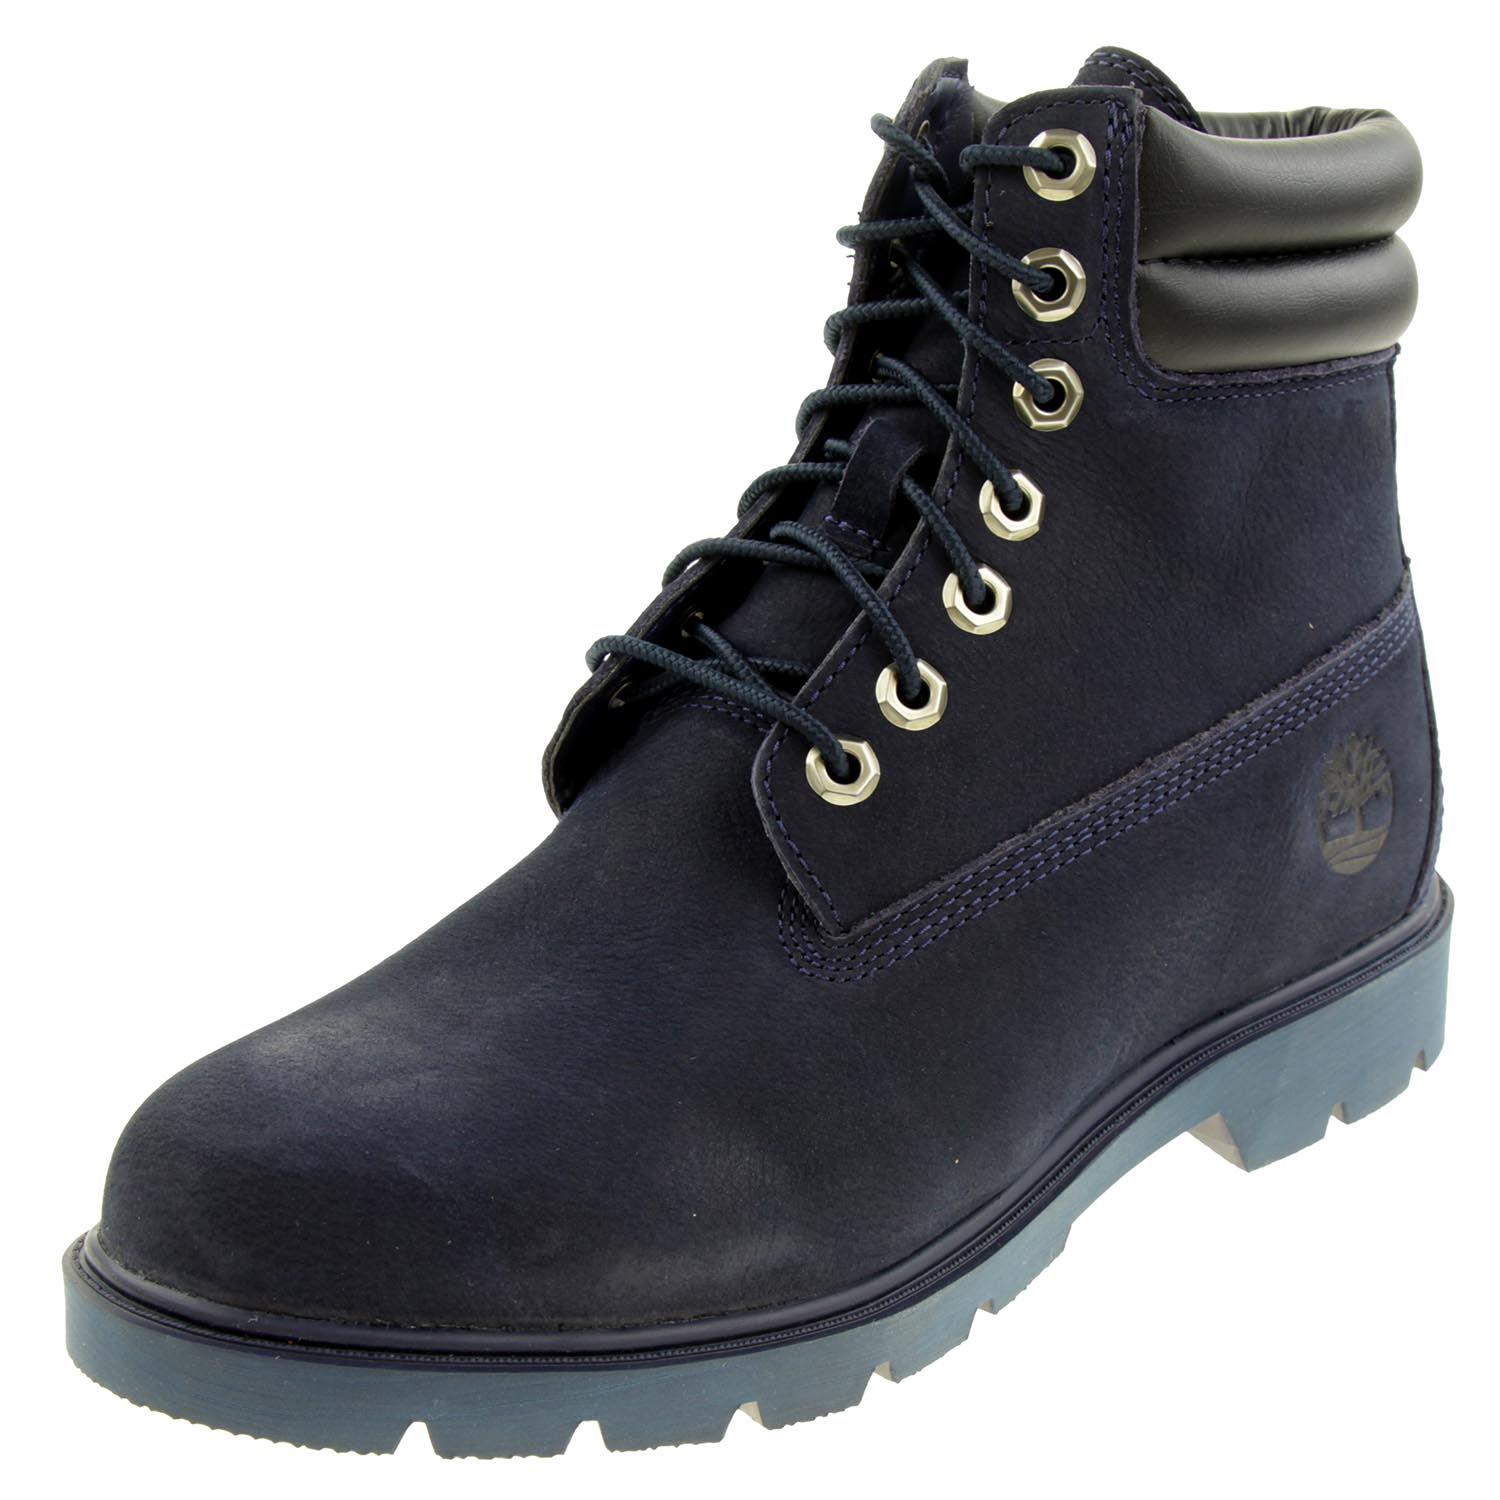 Timberland 6-Inch Basic Herren Stiefel Boots Waterproof navy Nubuck